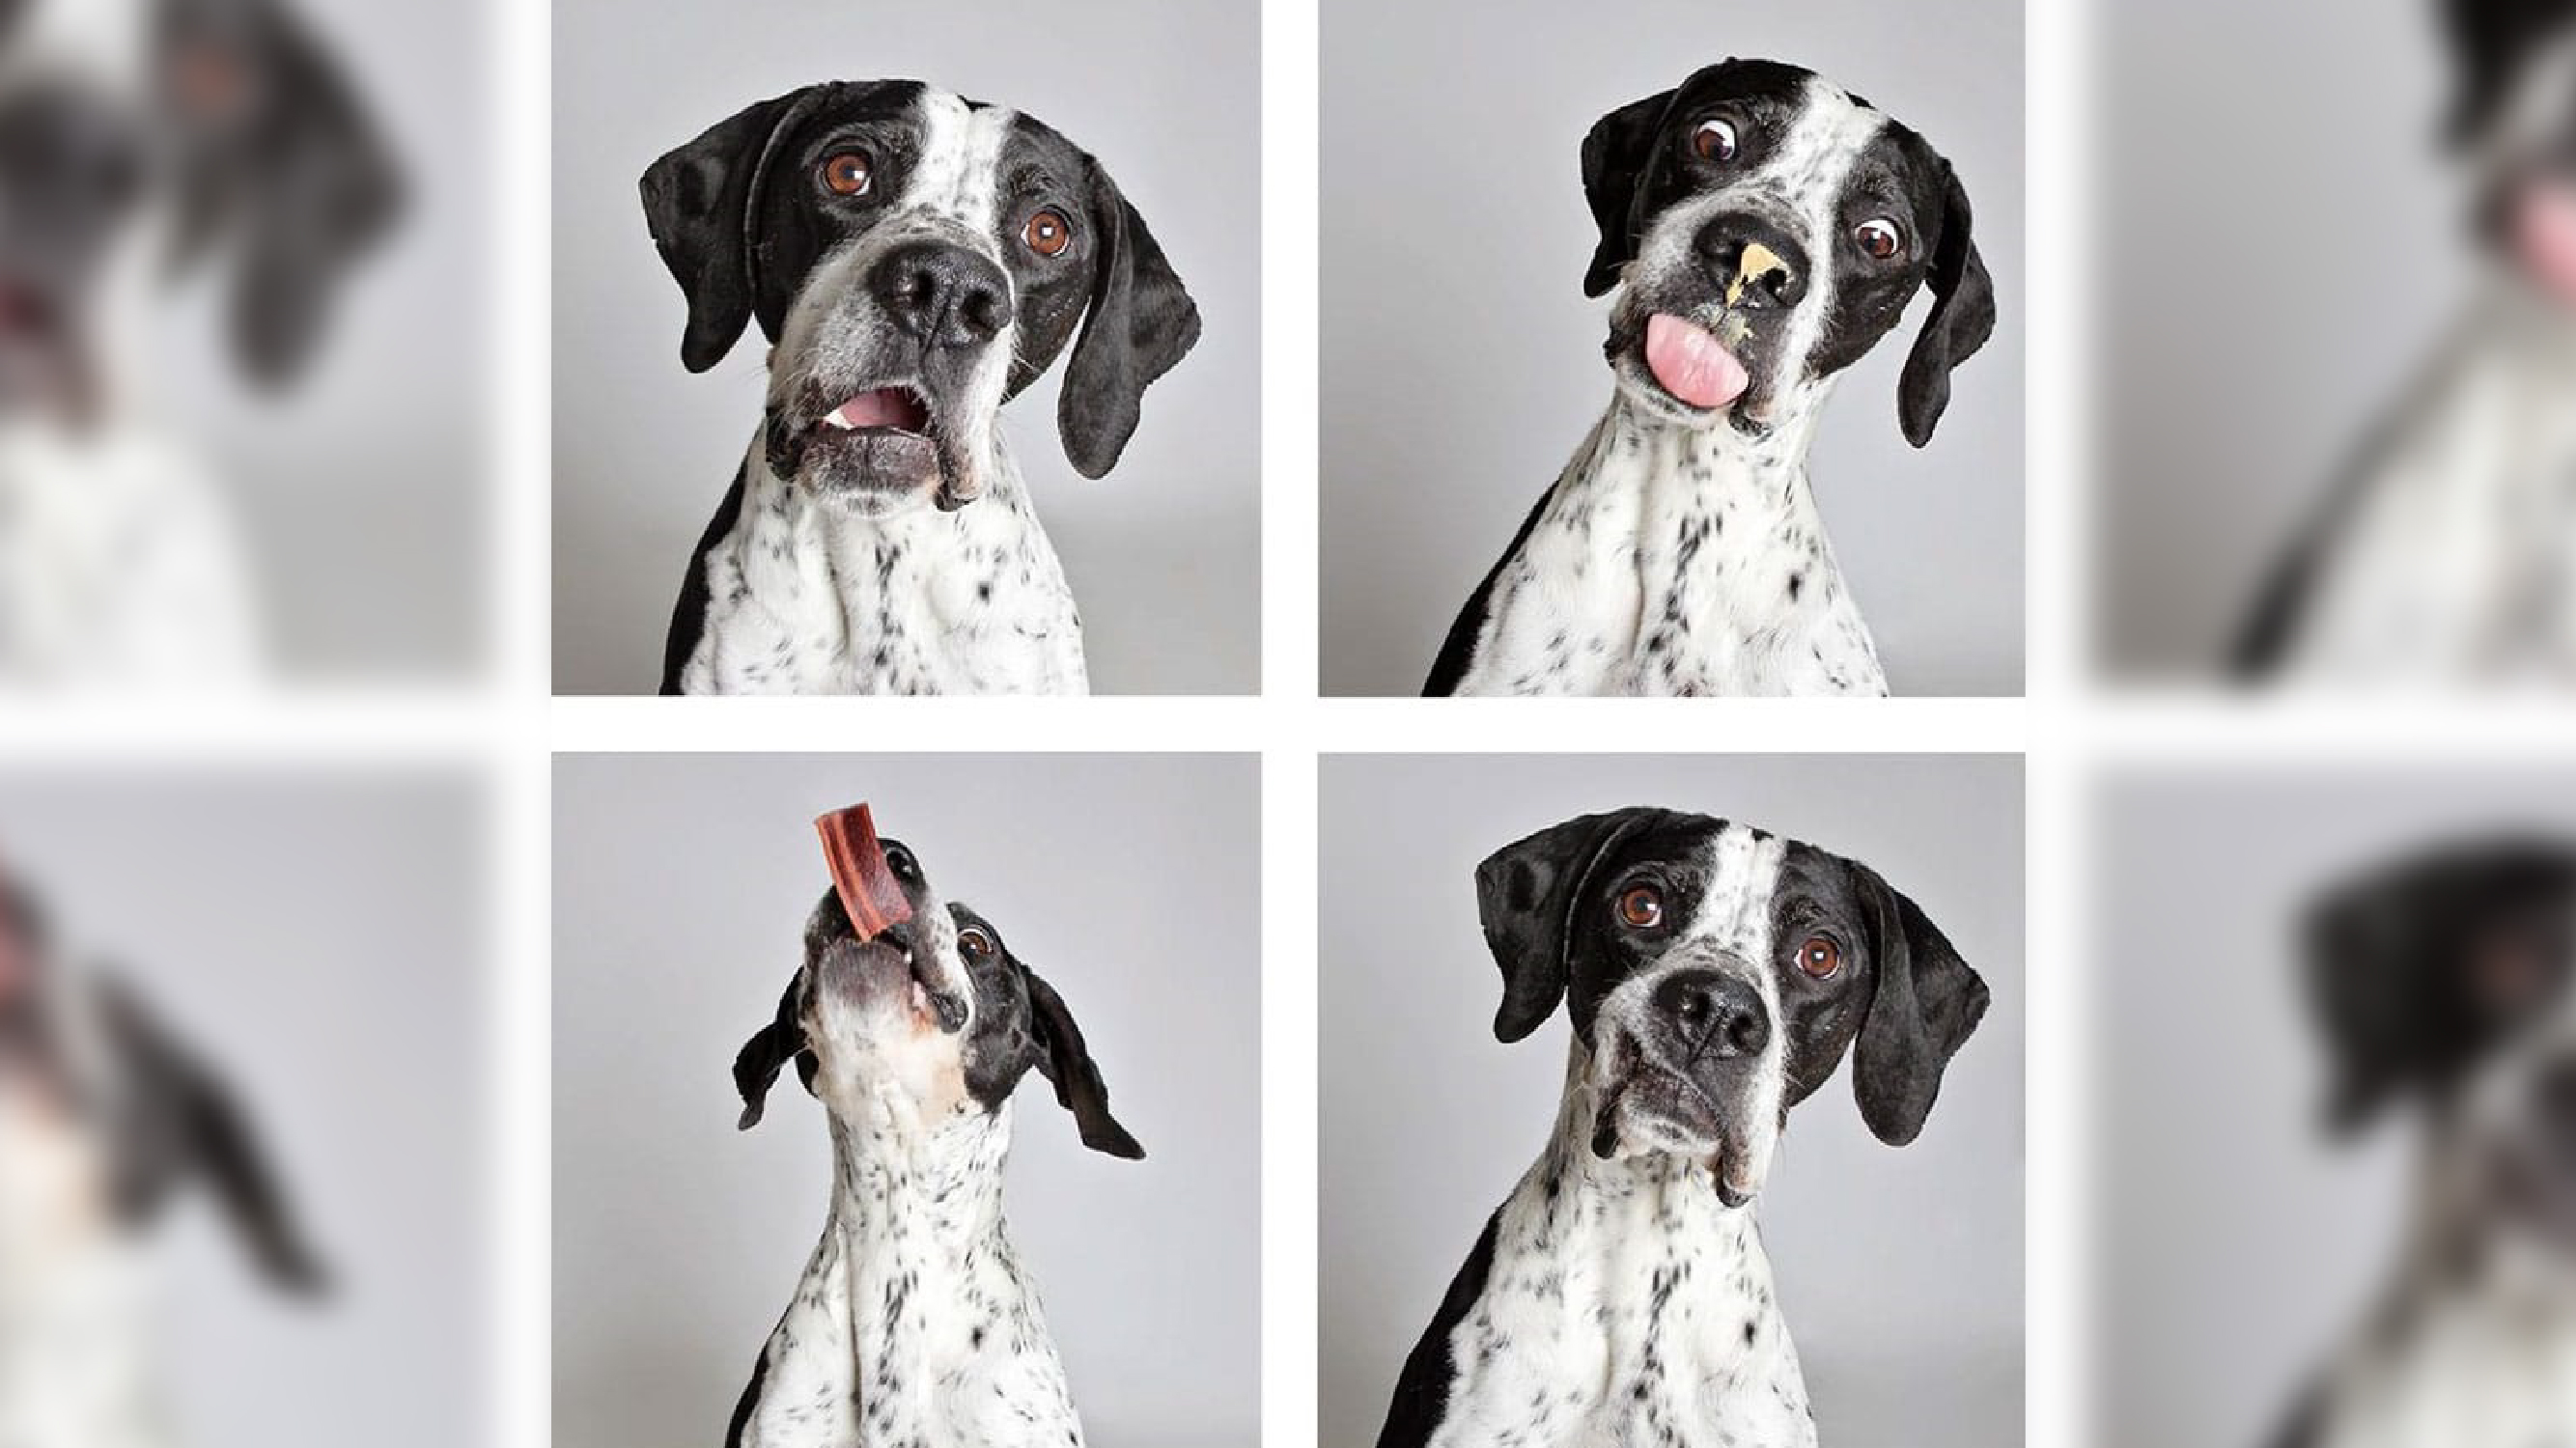 Fofura de cães em ensaio viabiliza adoção. Confira fotos!/ Imagem: Reprodução internet